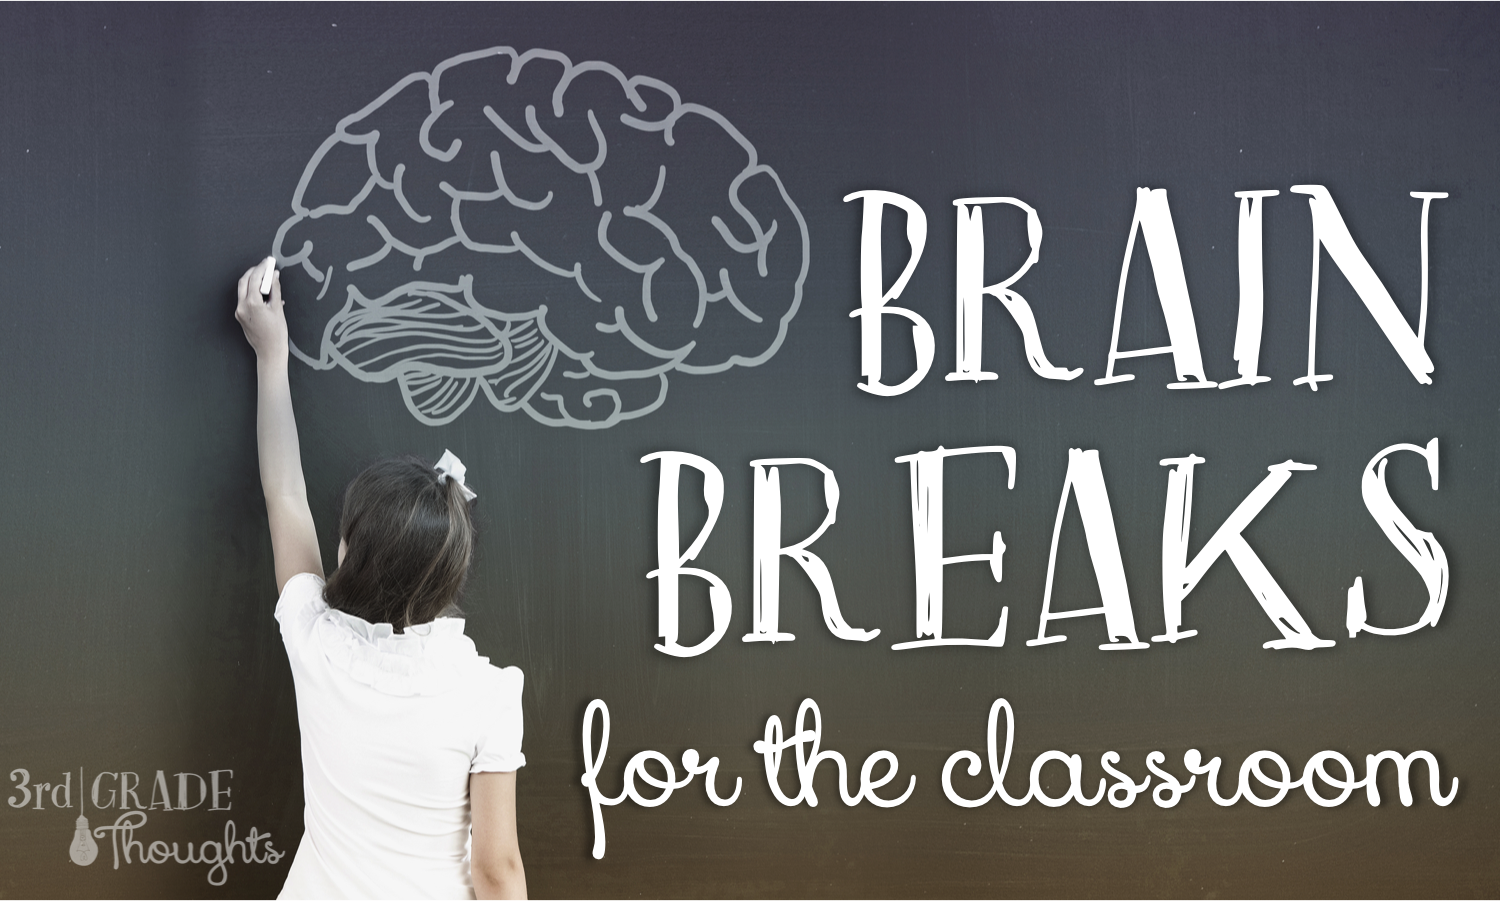 Breaking brain. Brain Break. Teacher Brain Breaks. Brain is broken.